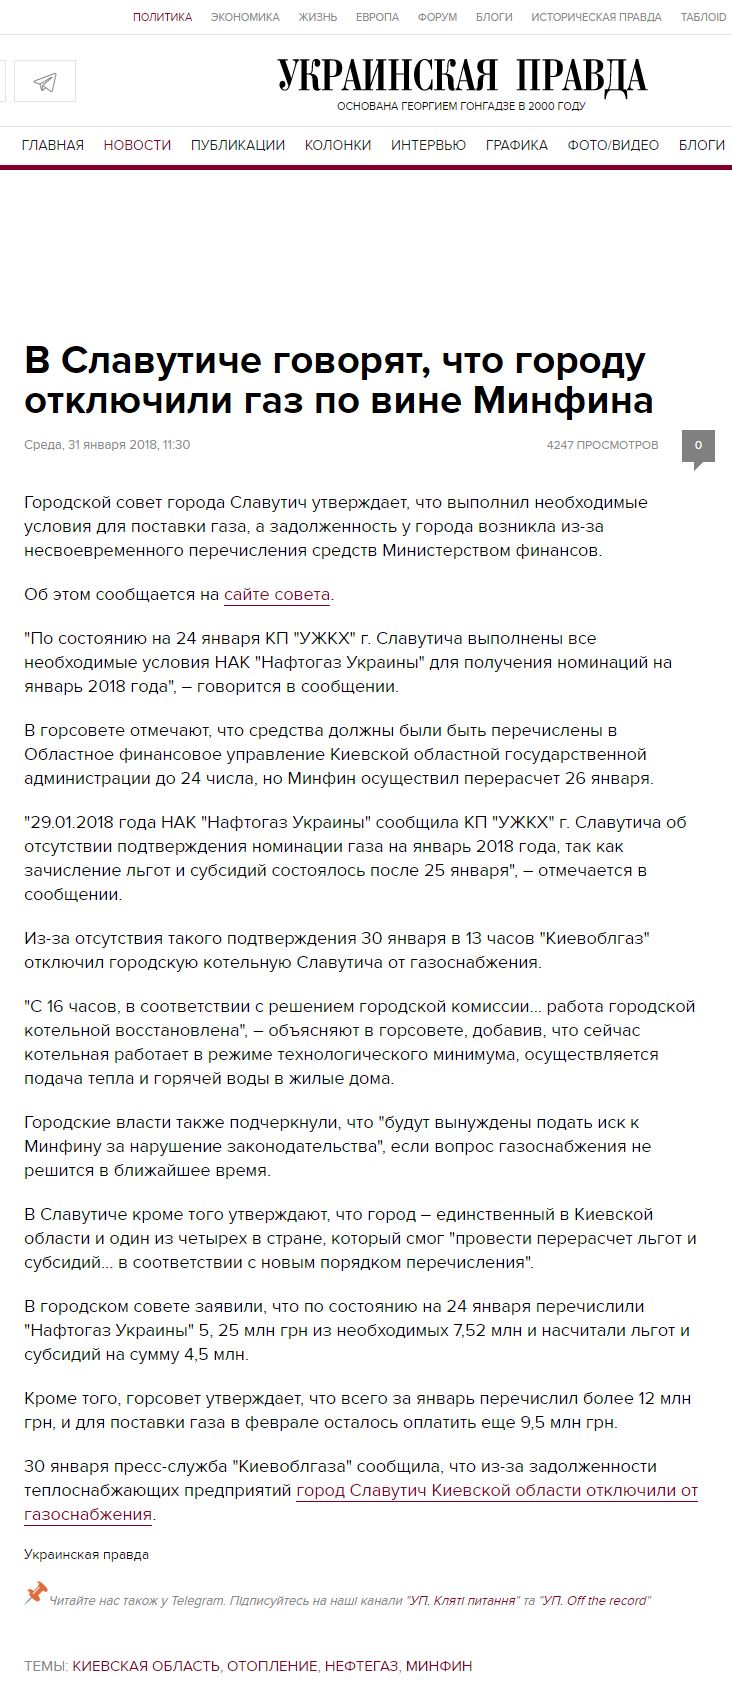 https://www.pravda.com.ua/rus/news/2018/01/31/7170124/